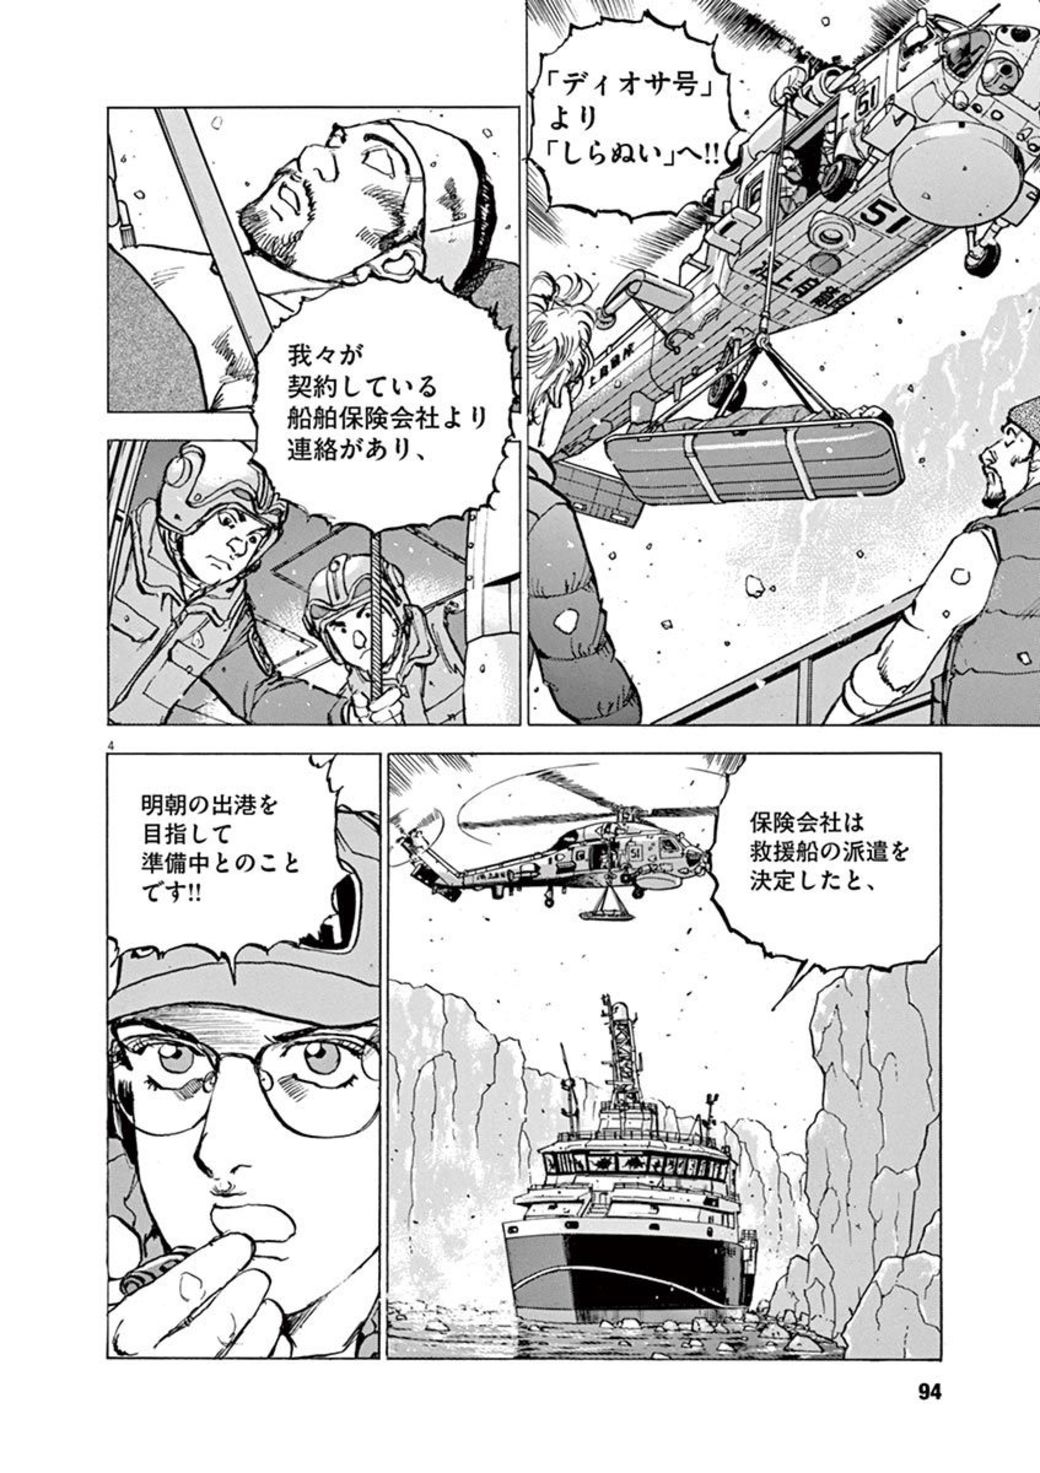 自衛隊の 魚雷発射 に大義名分はありうるか 漫画 空母いぶきgreat Game 第4話 東洋経済オンライン 沈黙の艦隊 などの名作で知られるかわぐ ｄメニューニュース Nttドコモ